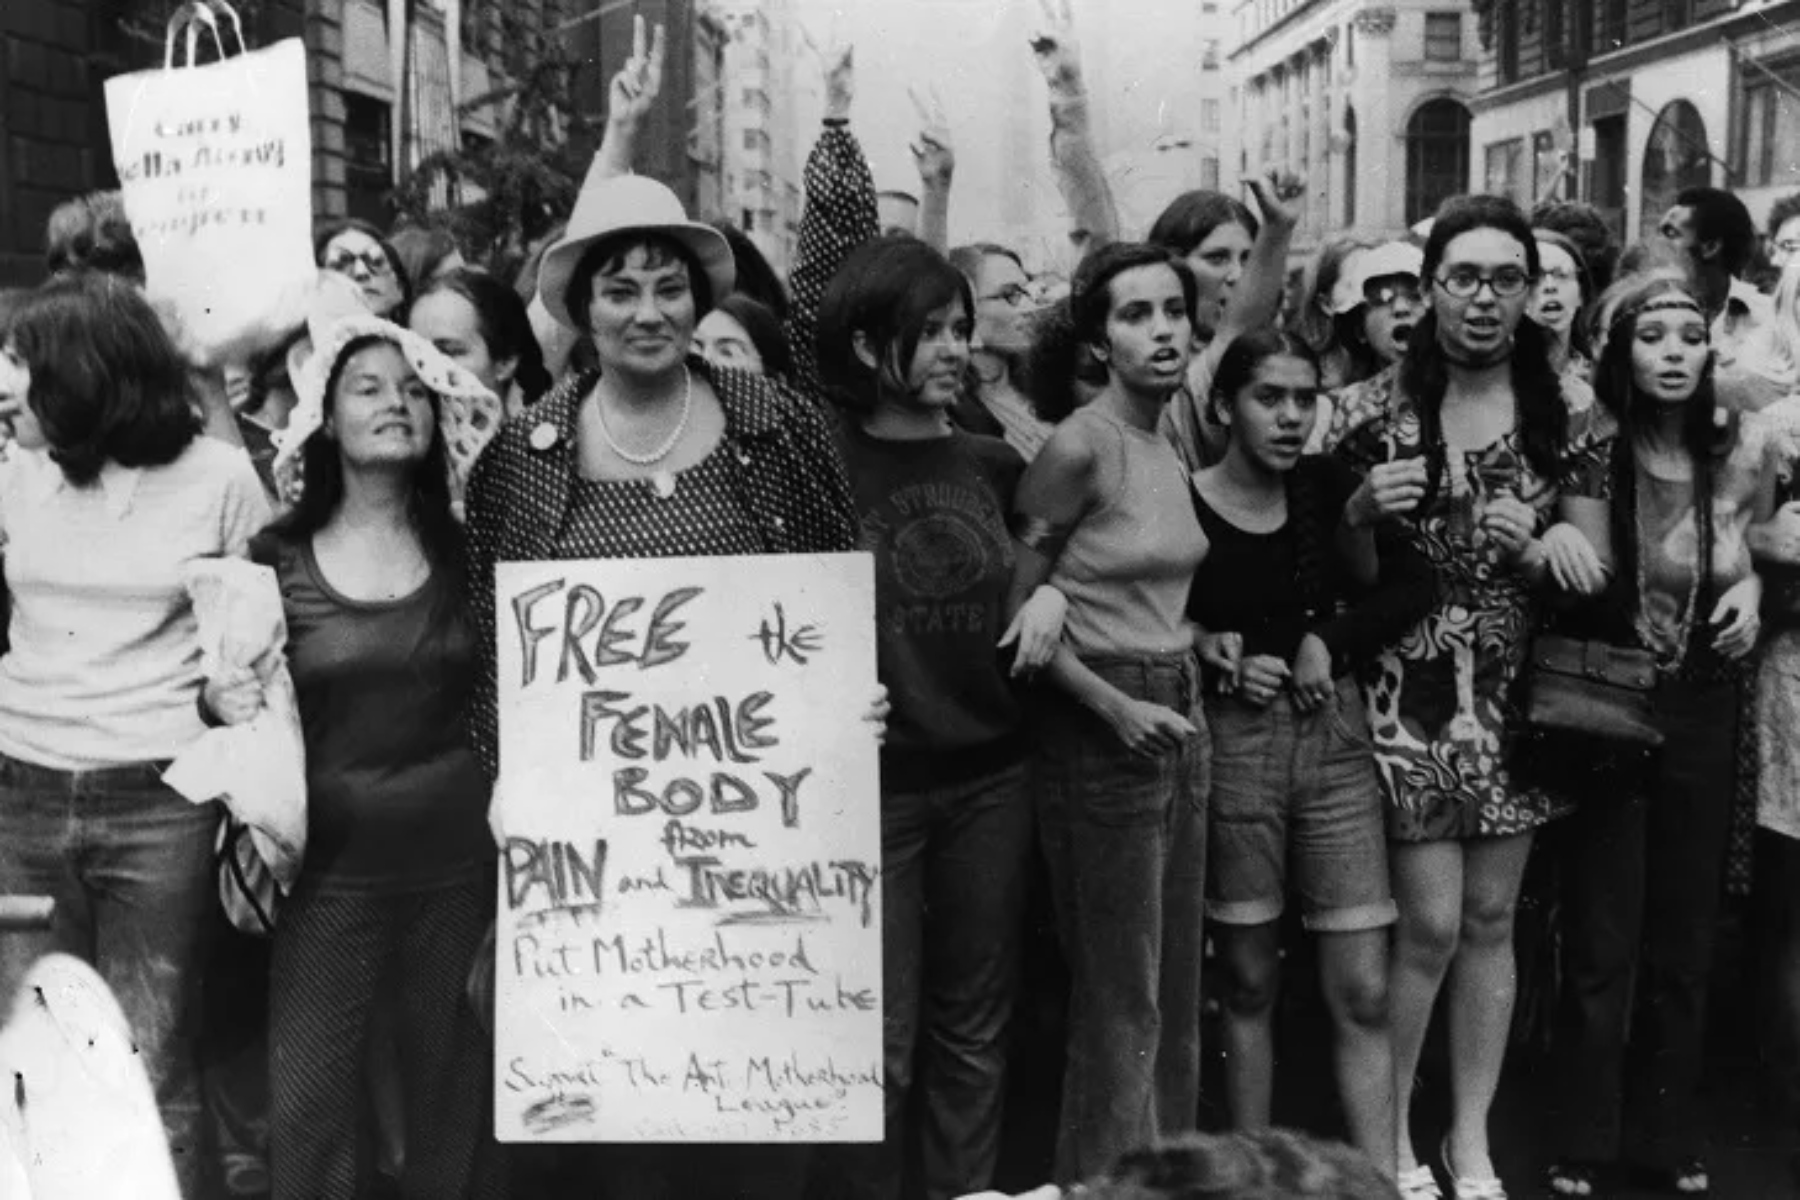 Σεξουαλική επανάσταση: Πώς η σεξουαλική επανάσταση έχει επηρεάσει σήμερα την δική μας σεξουαλική ζωή;